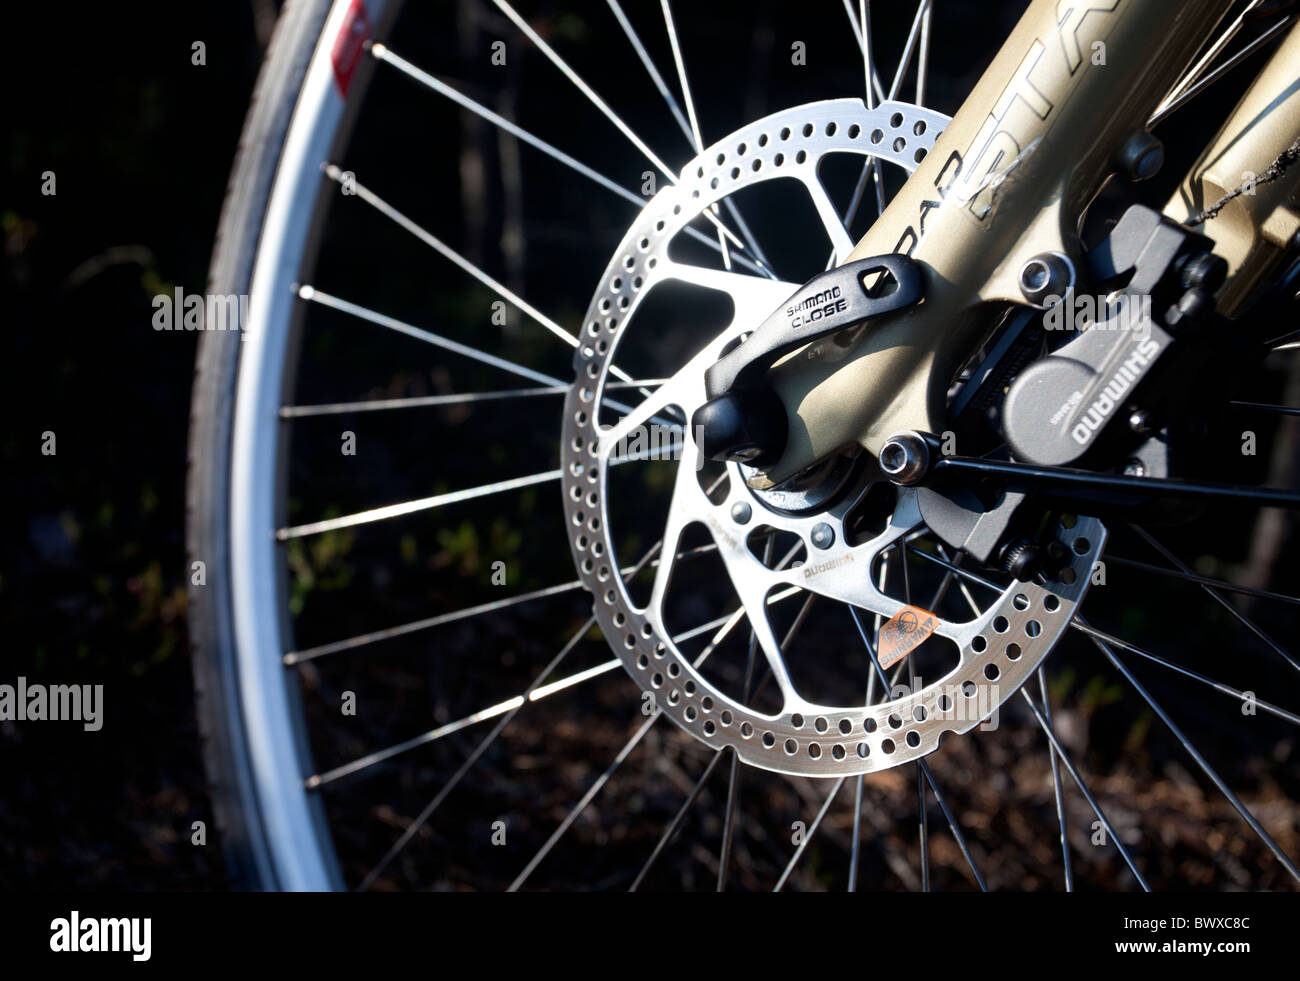 Shimano freni a disco idraulici in bicicletta ruota anteriore Foto Stock